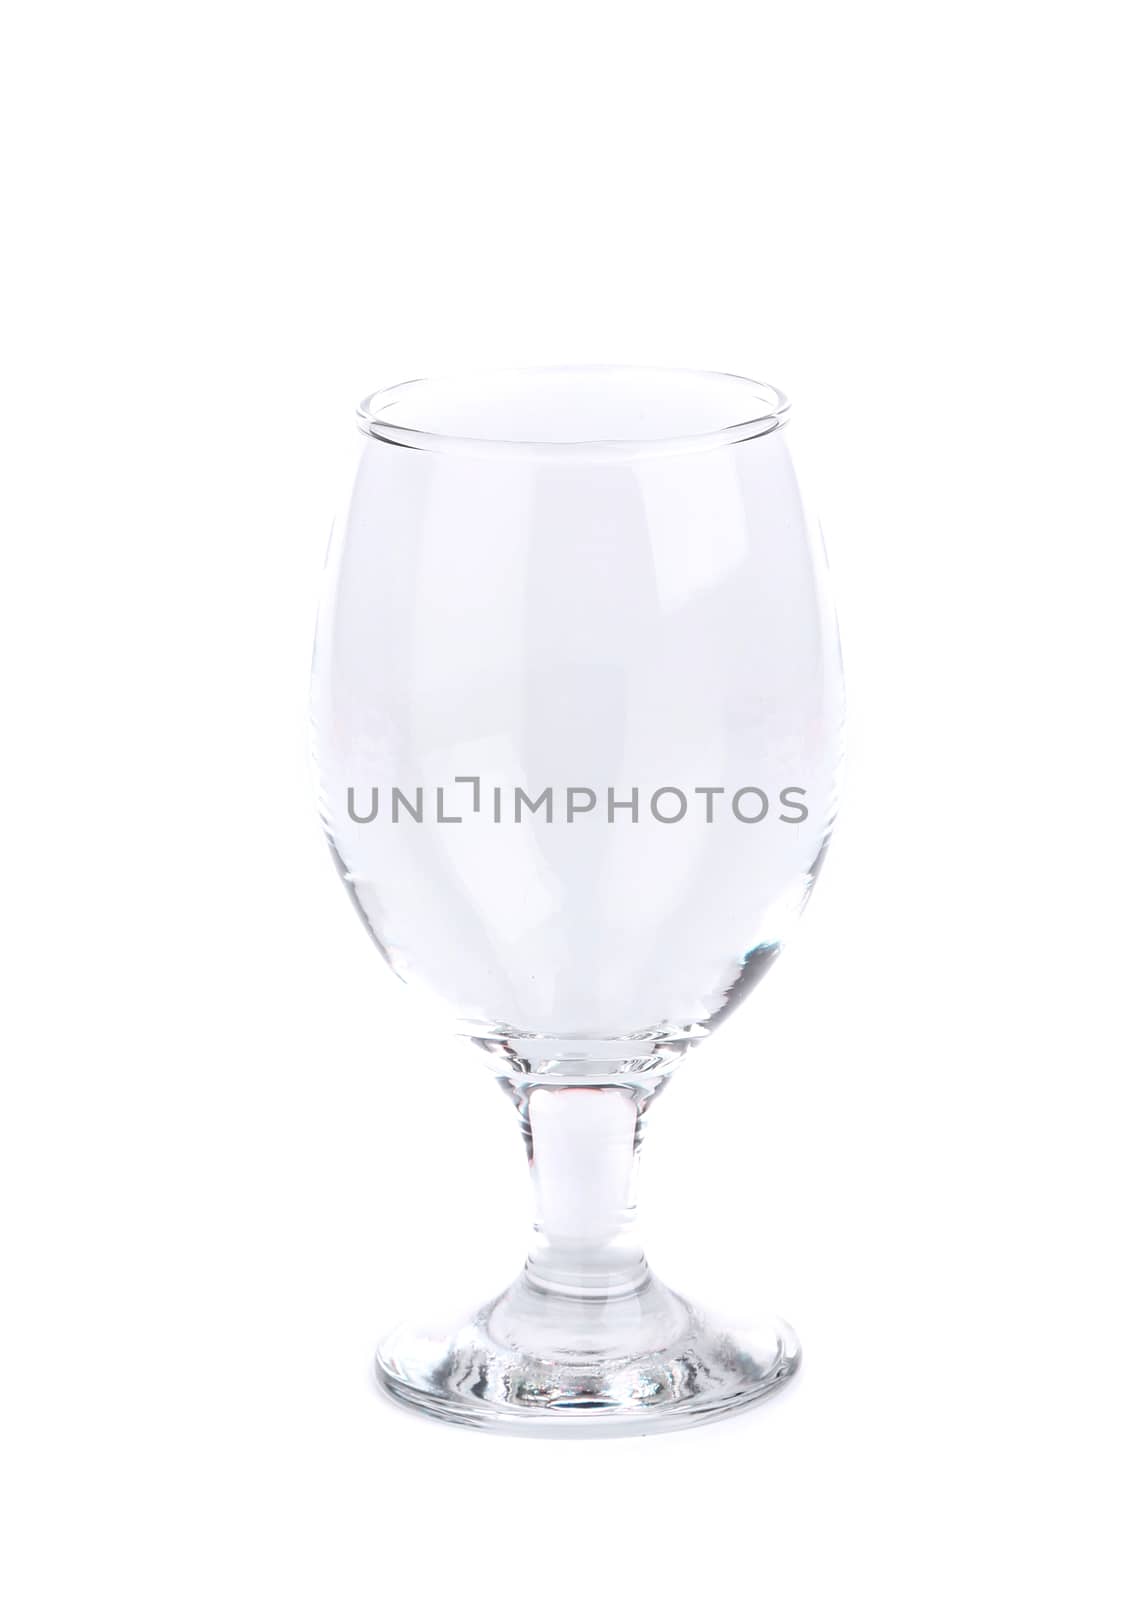 Empty wine glass. by indigolotos